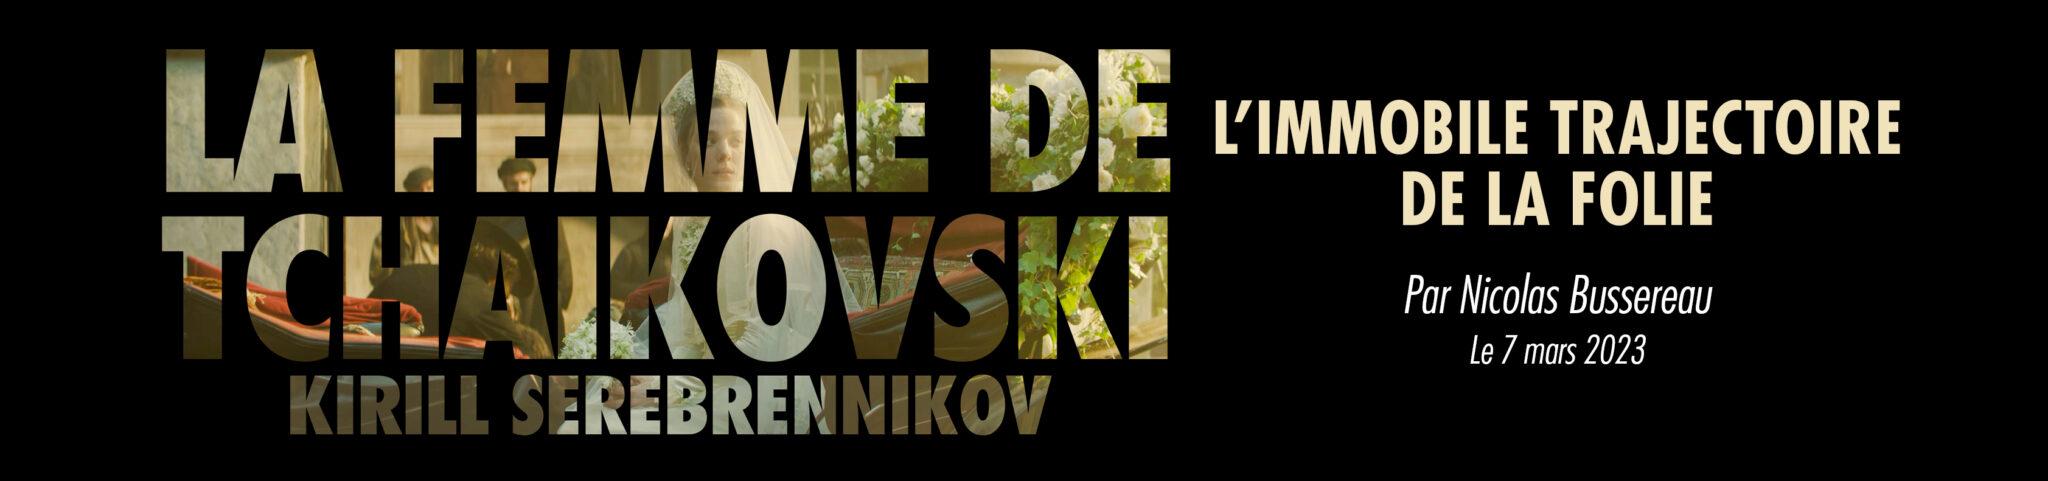 La Femme de Tchaïkovski – L’immobile trajectoire de la folie